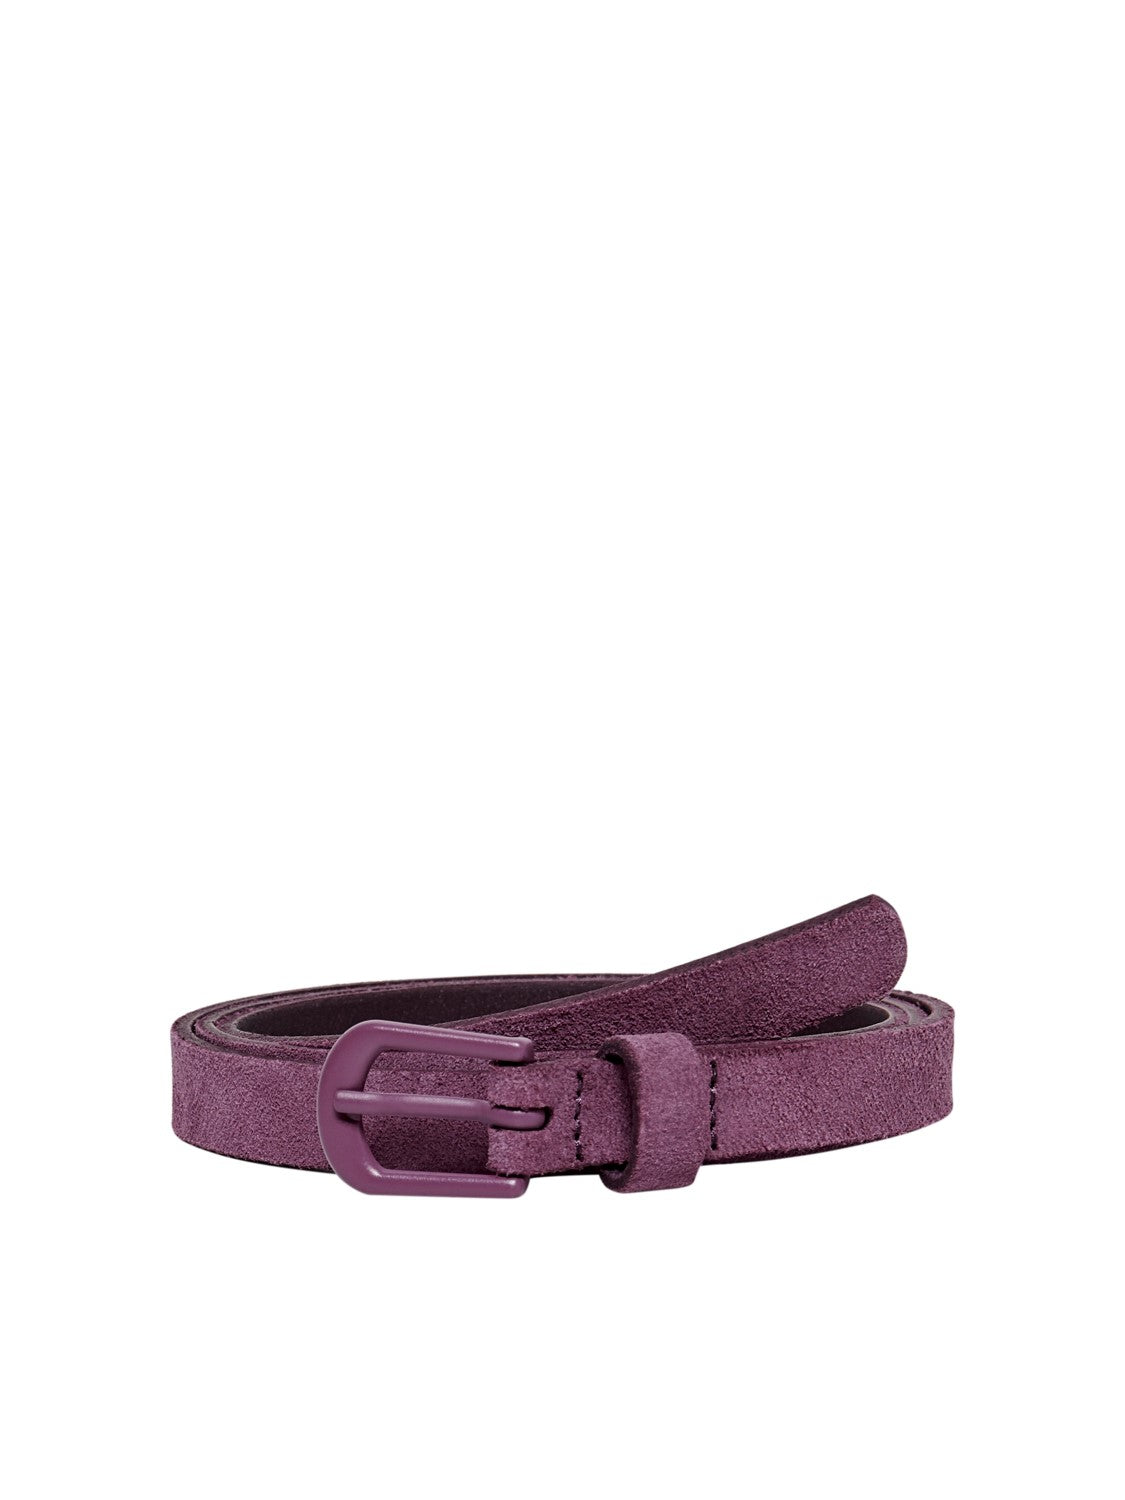 Women's suede belt (3 colors)